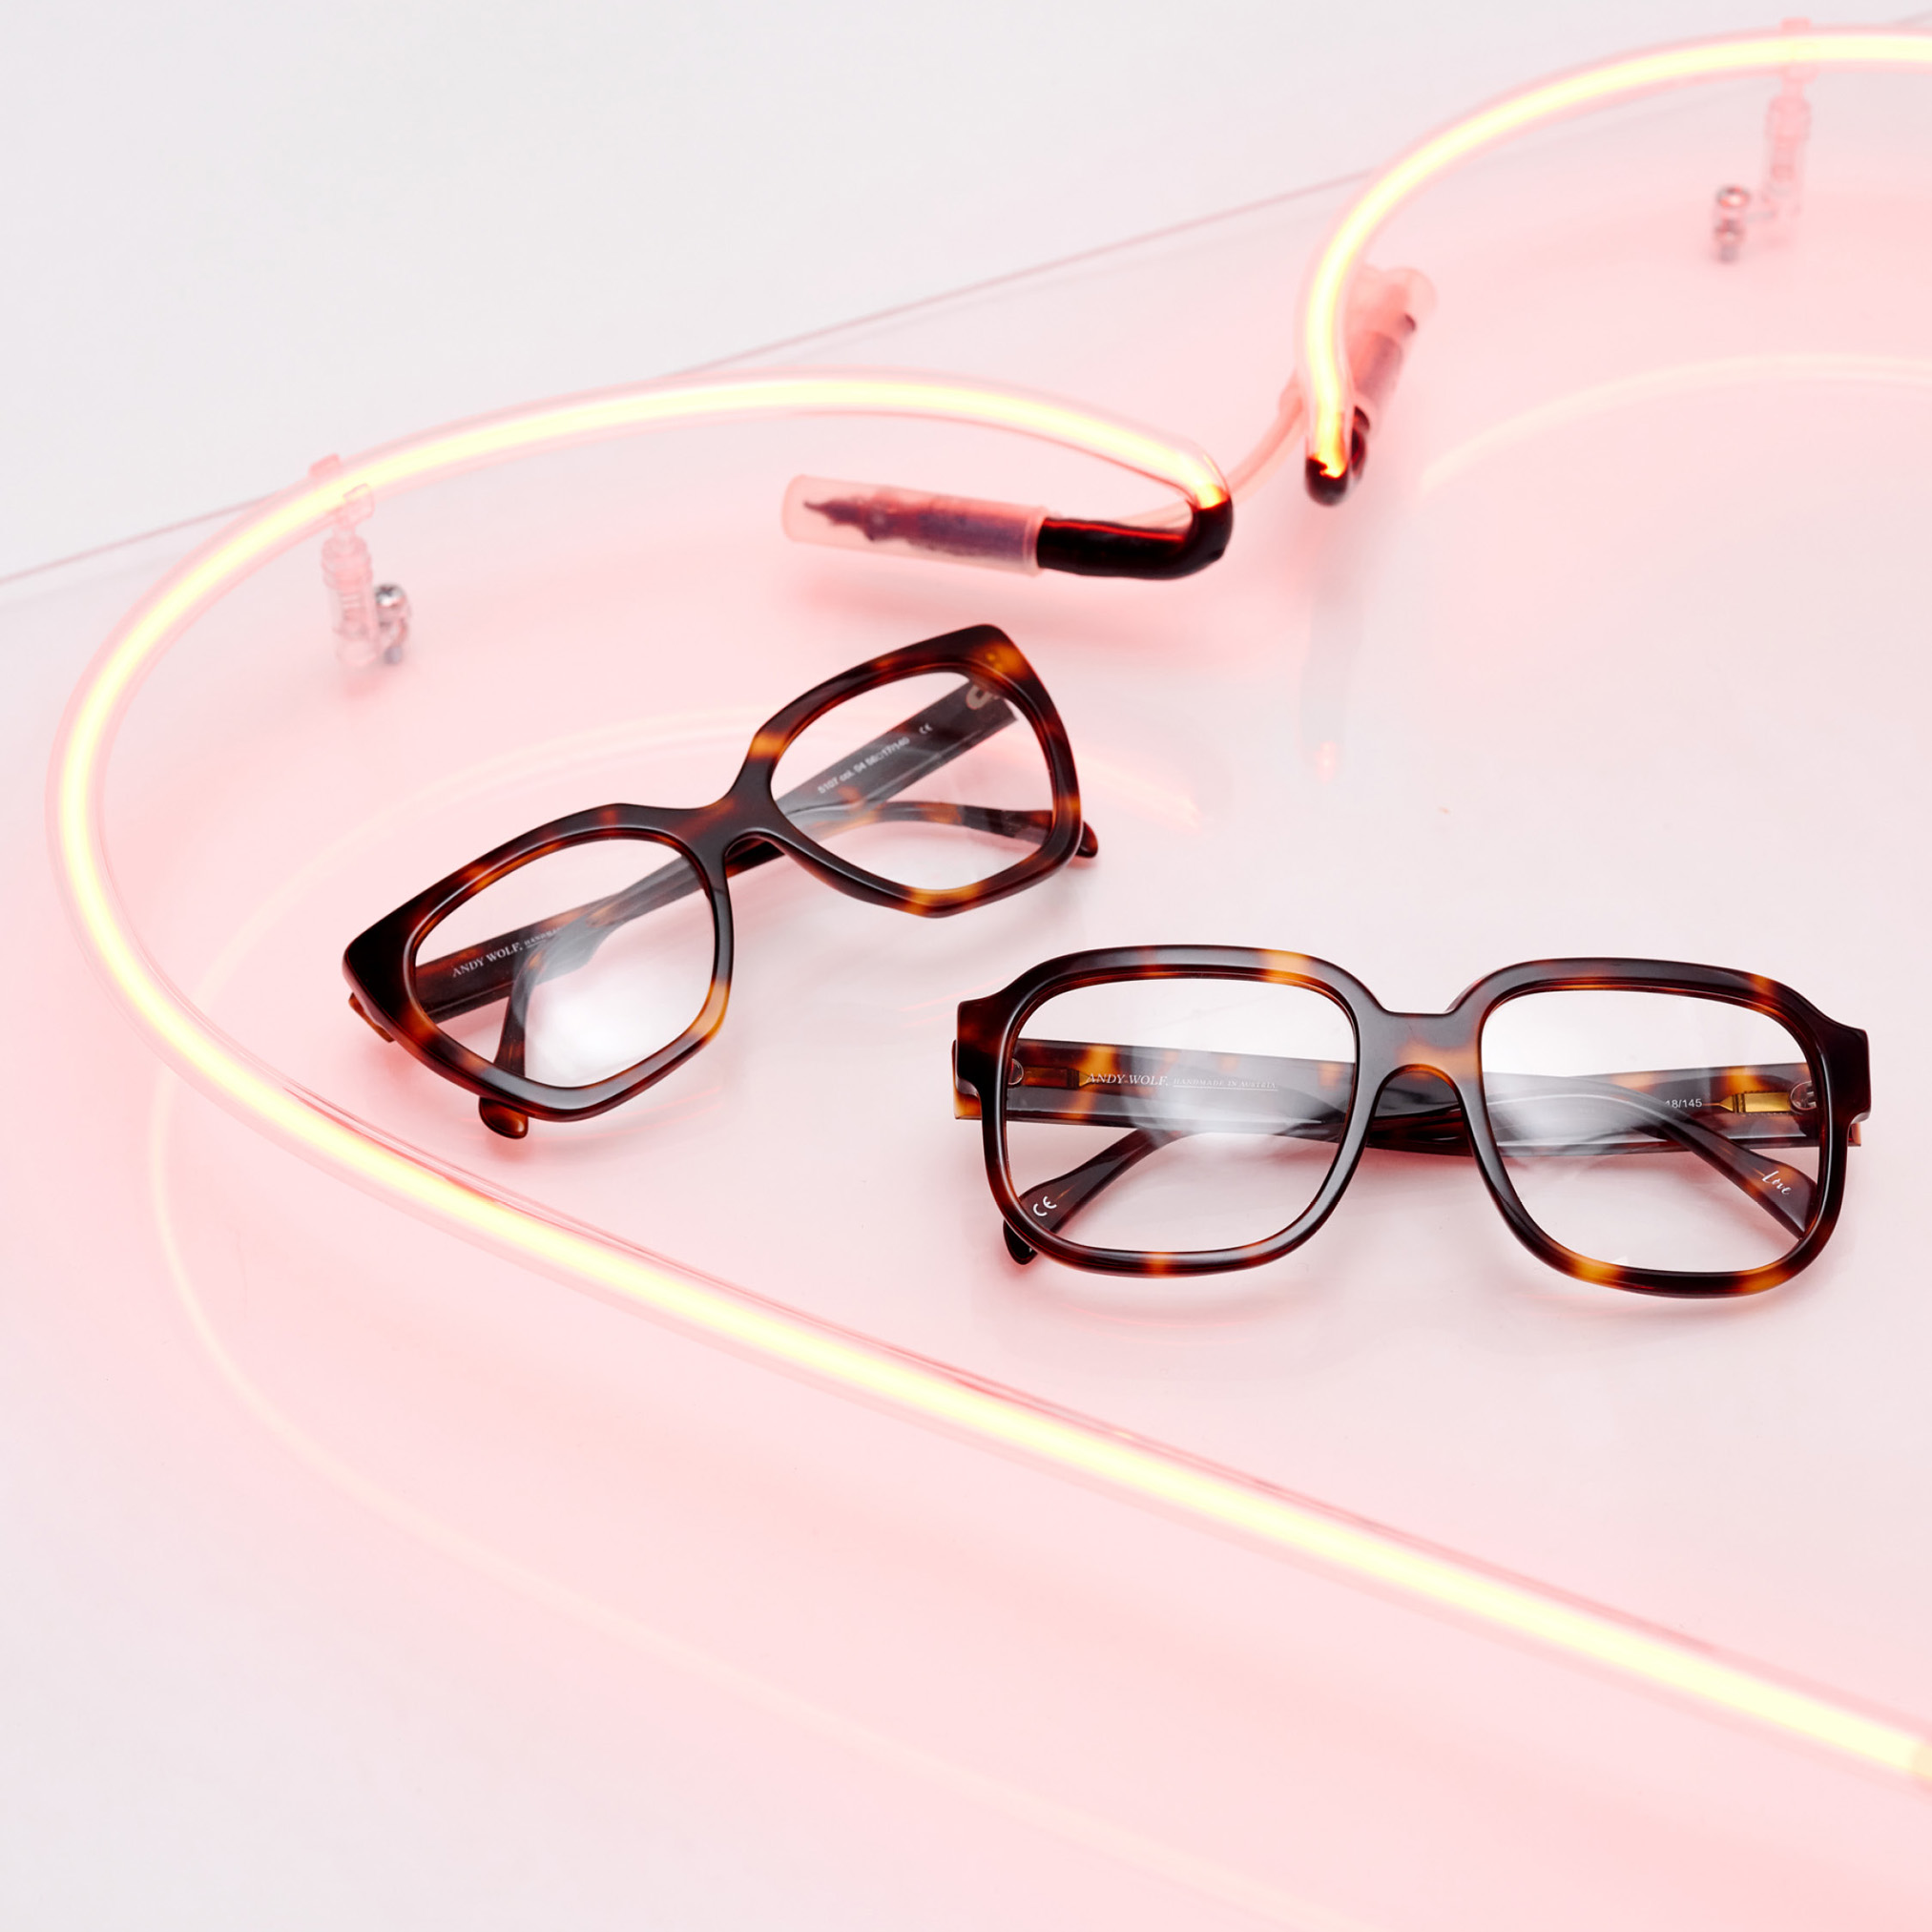 Brillengestelle für jeden Style.